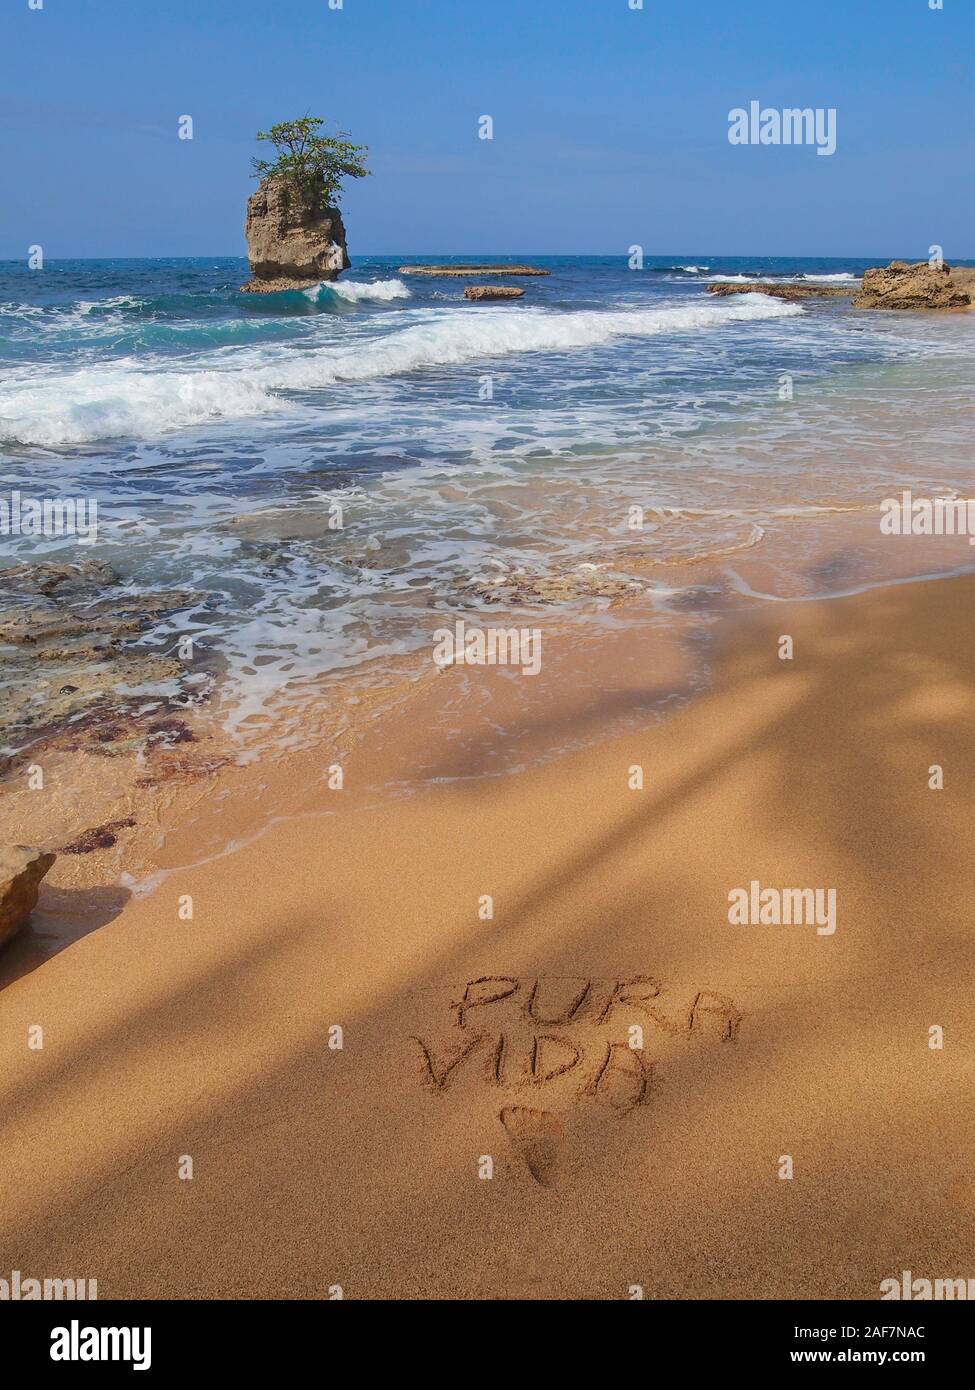 Mare tropicale a riva con un isolotto roccioso e le parole 'PURA VIDA" scritto nella sabbia, costa caraibica del Costa Rica, America Centrale Foto Stock